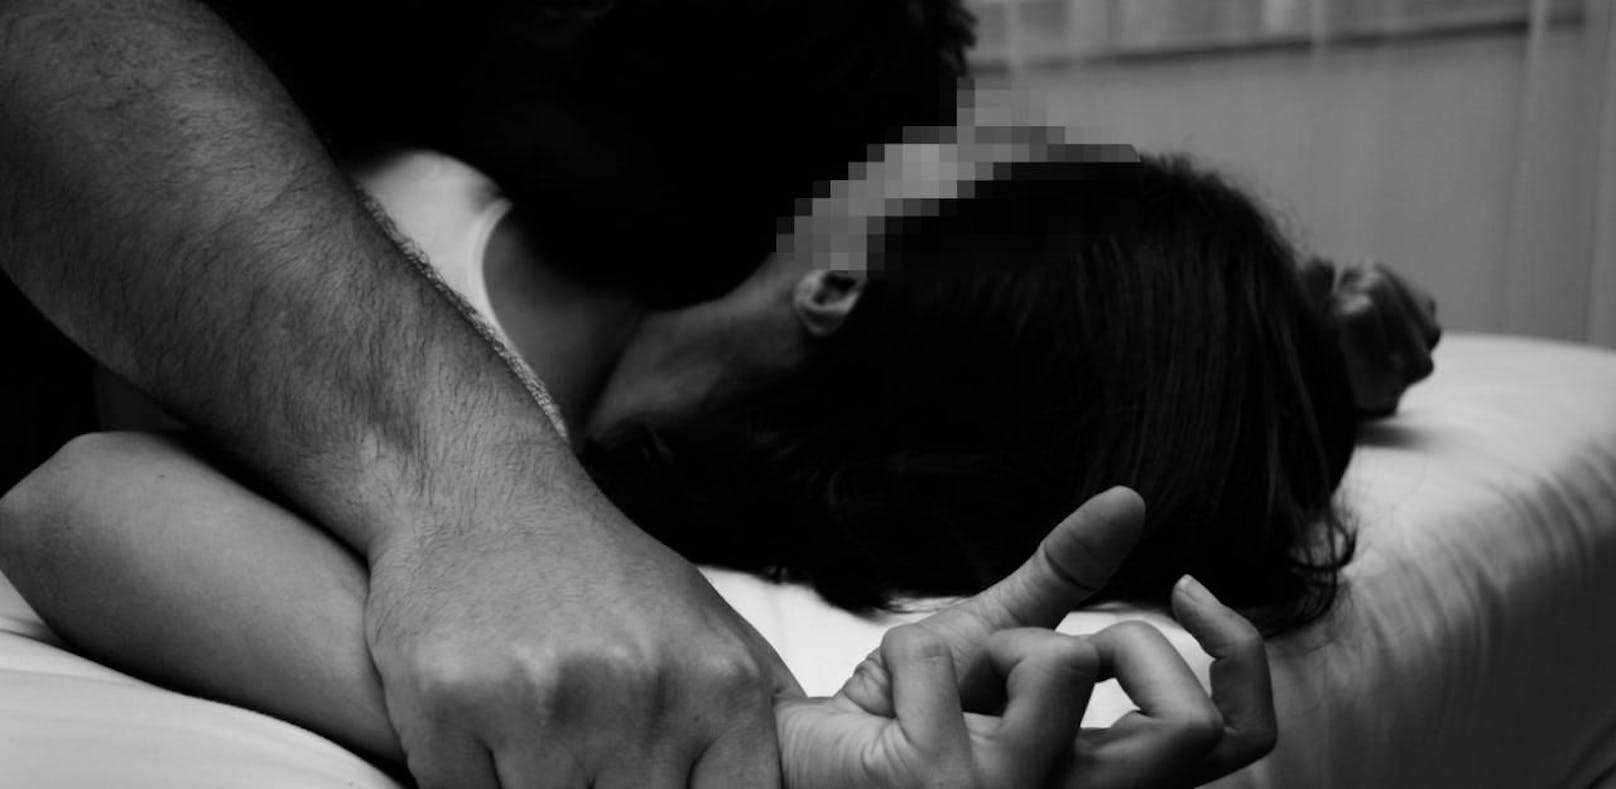 Die Frau hatte mit ihrem ehemaligen Vergewaltiger einvernehmlichen Sex